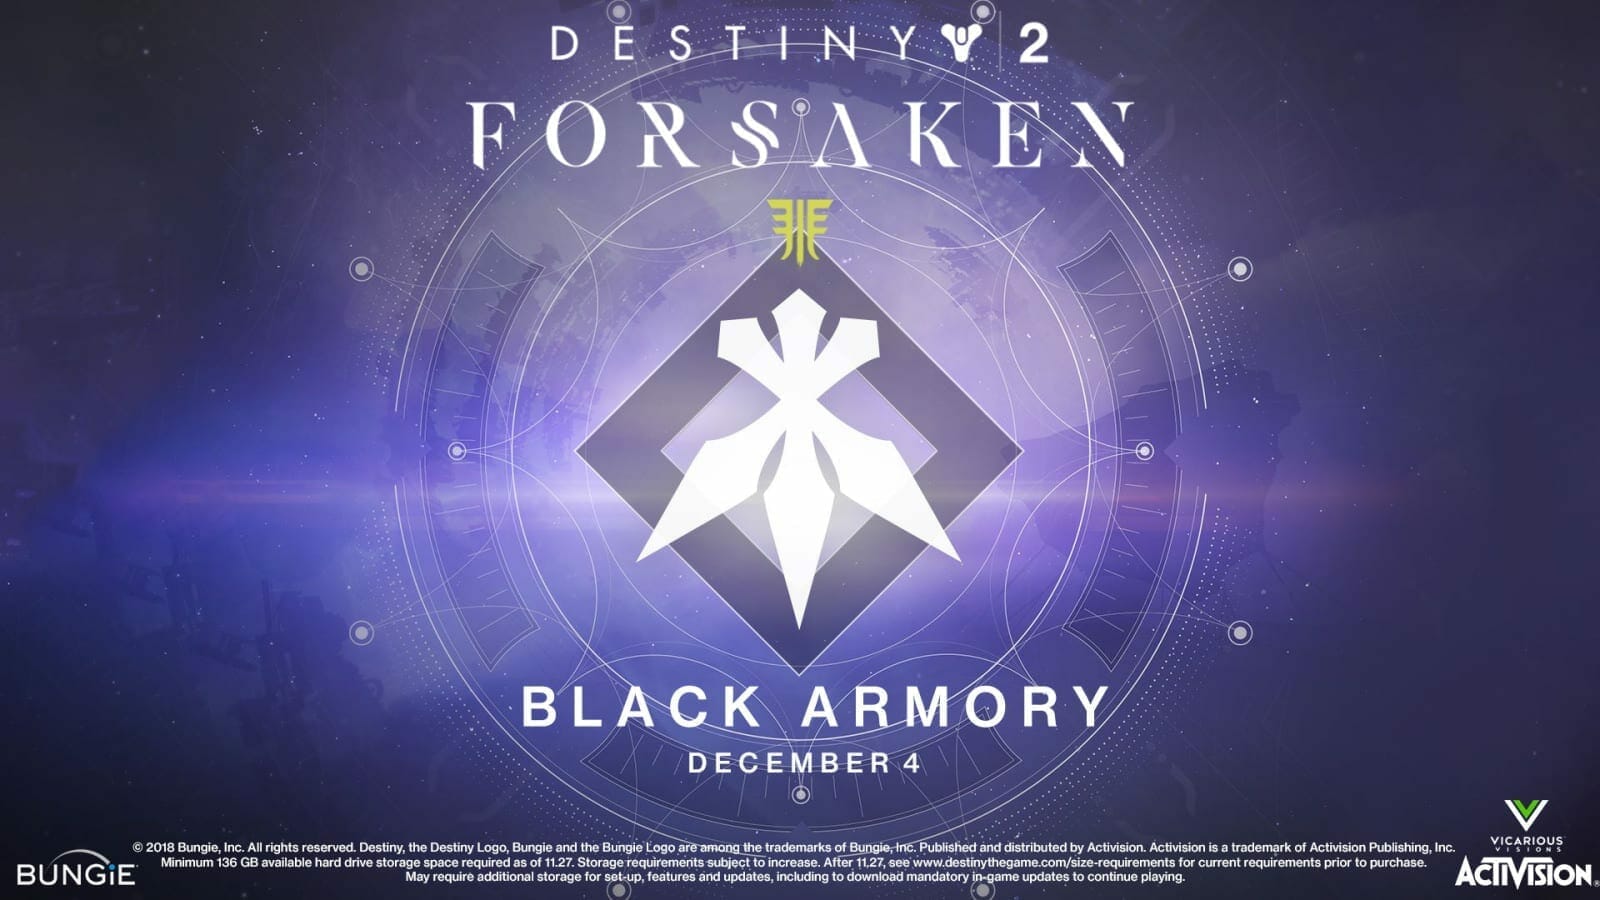 Destiny 2 Forsaken: Black Armory Release Date